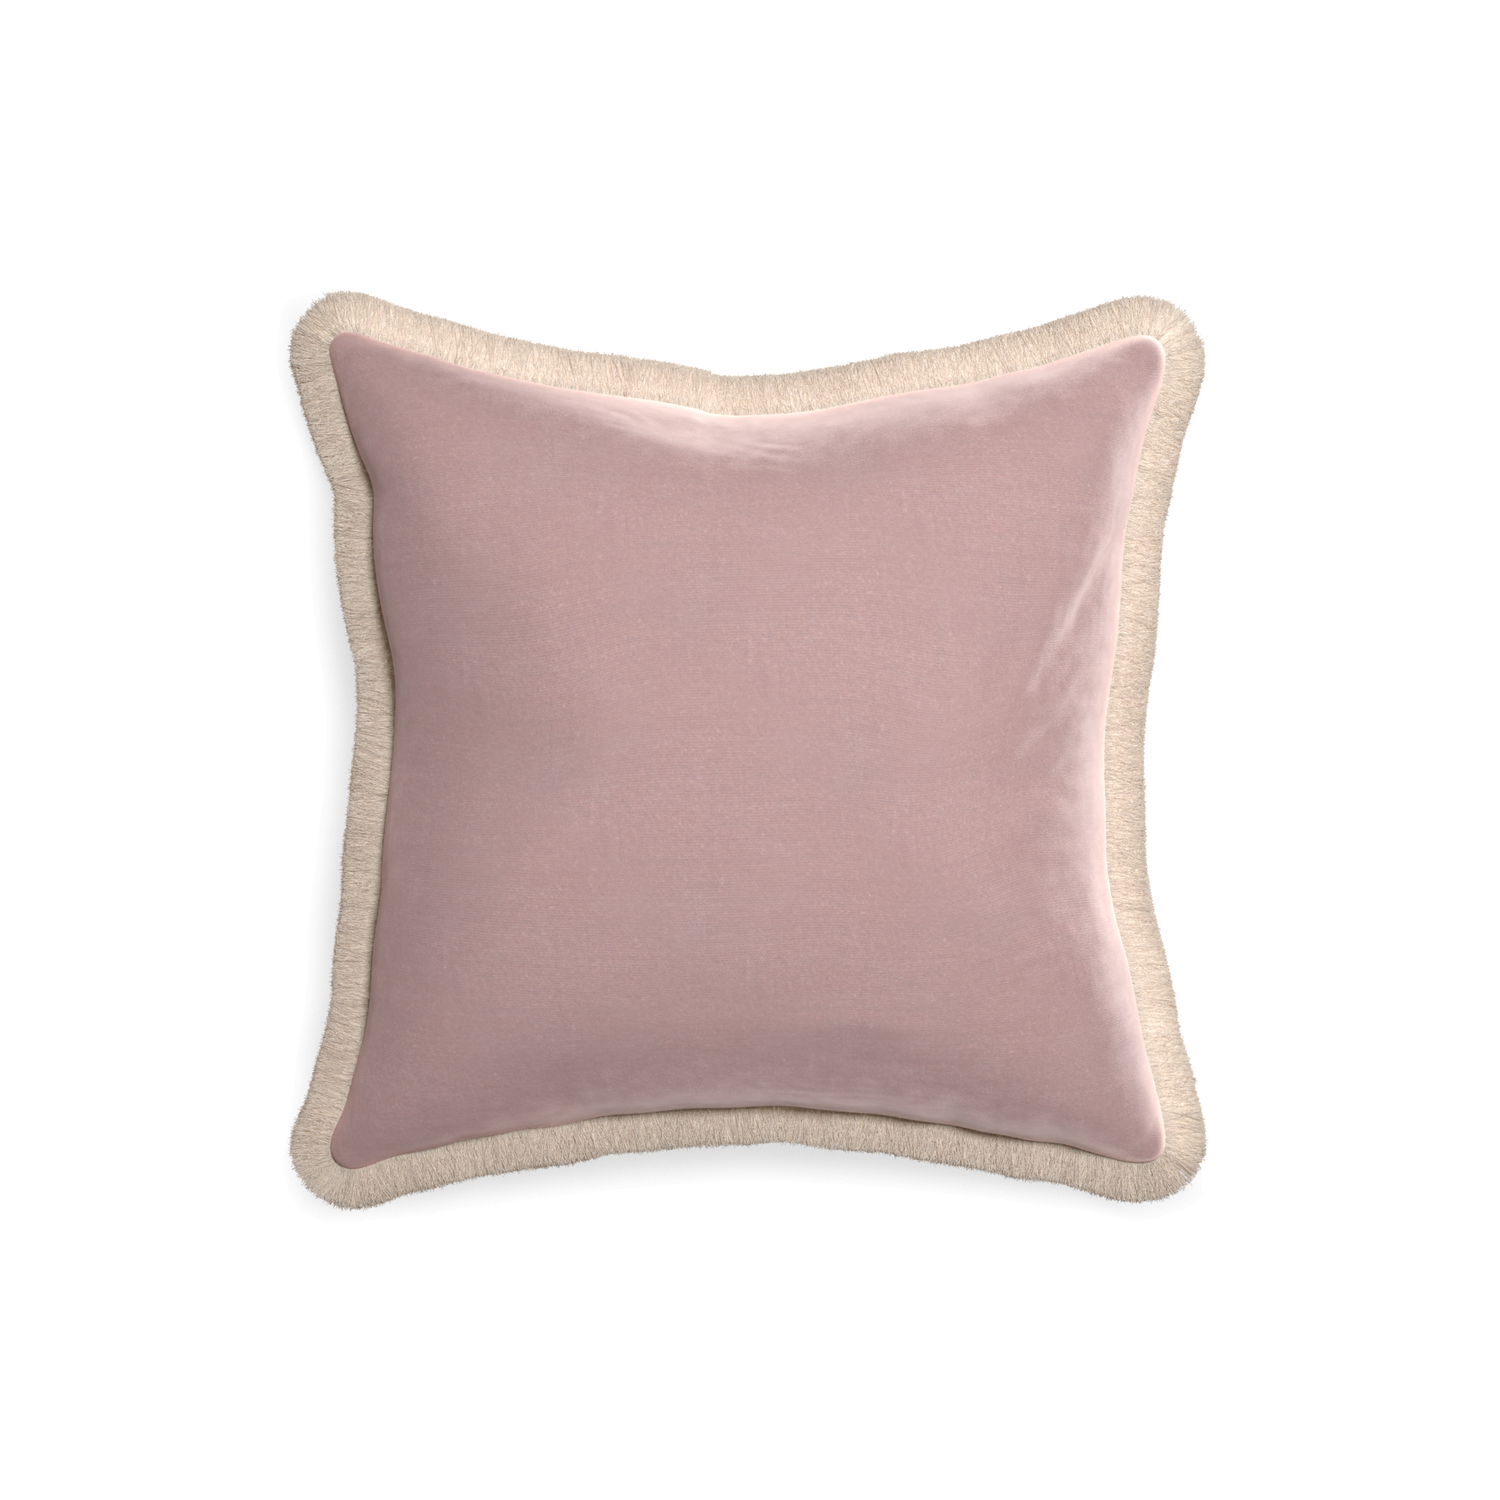 18-square mauve velvet custom pillow with cream fringe on white background